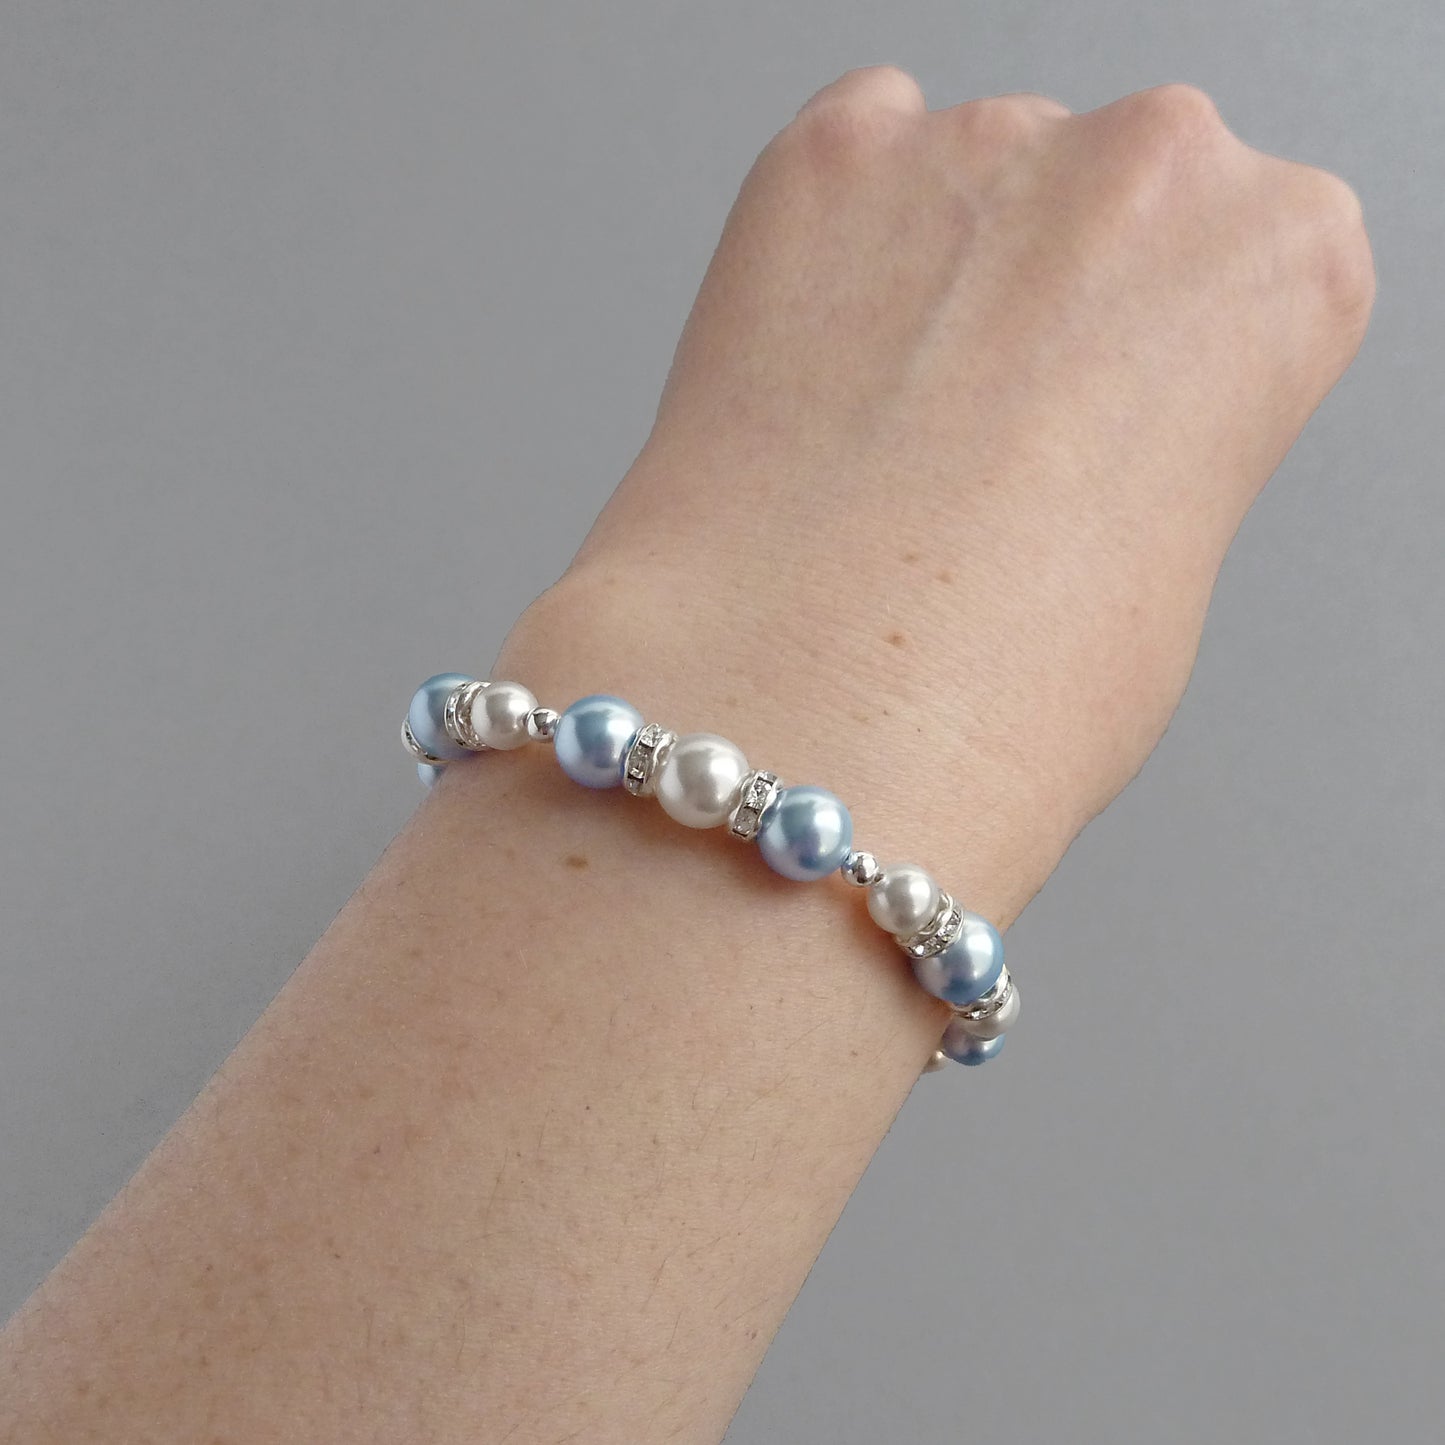 Baby blue pearl bracelets